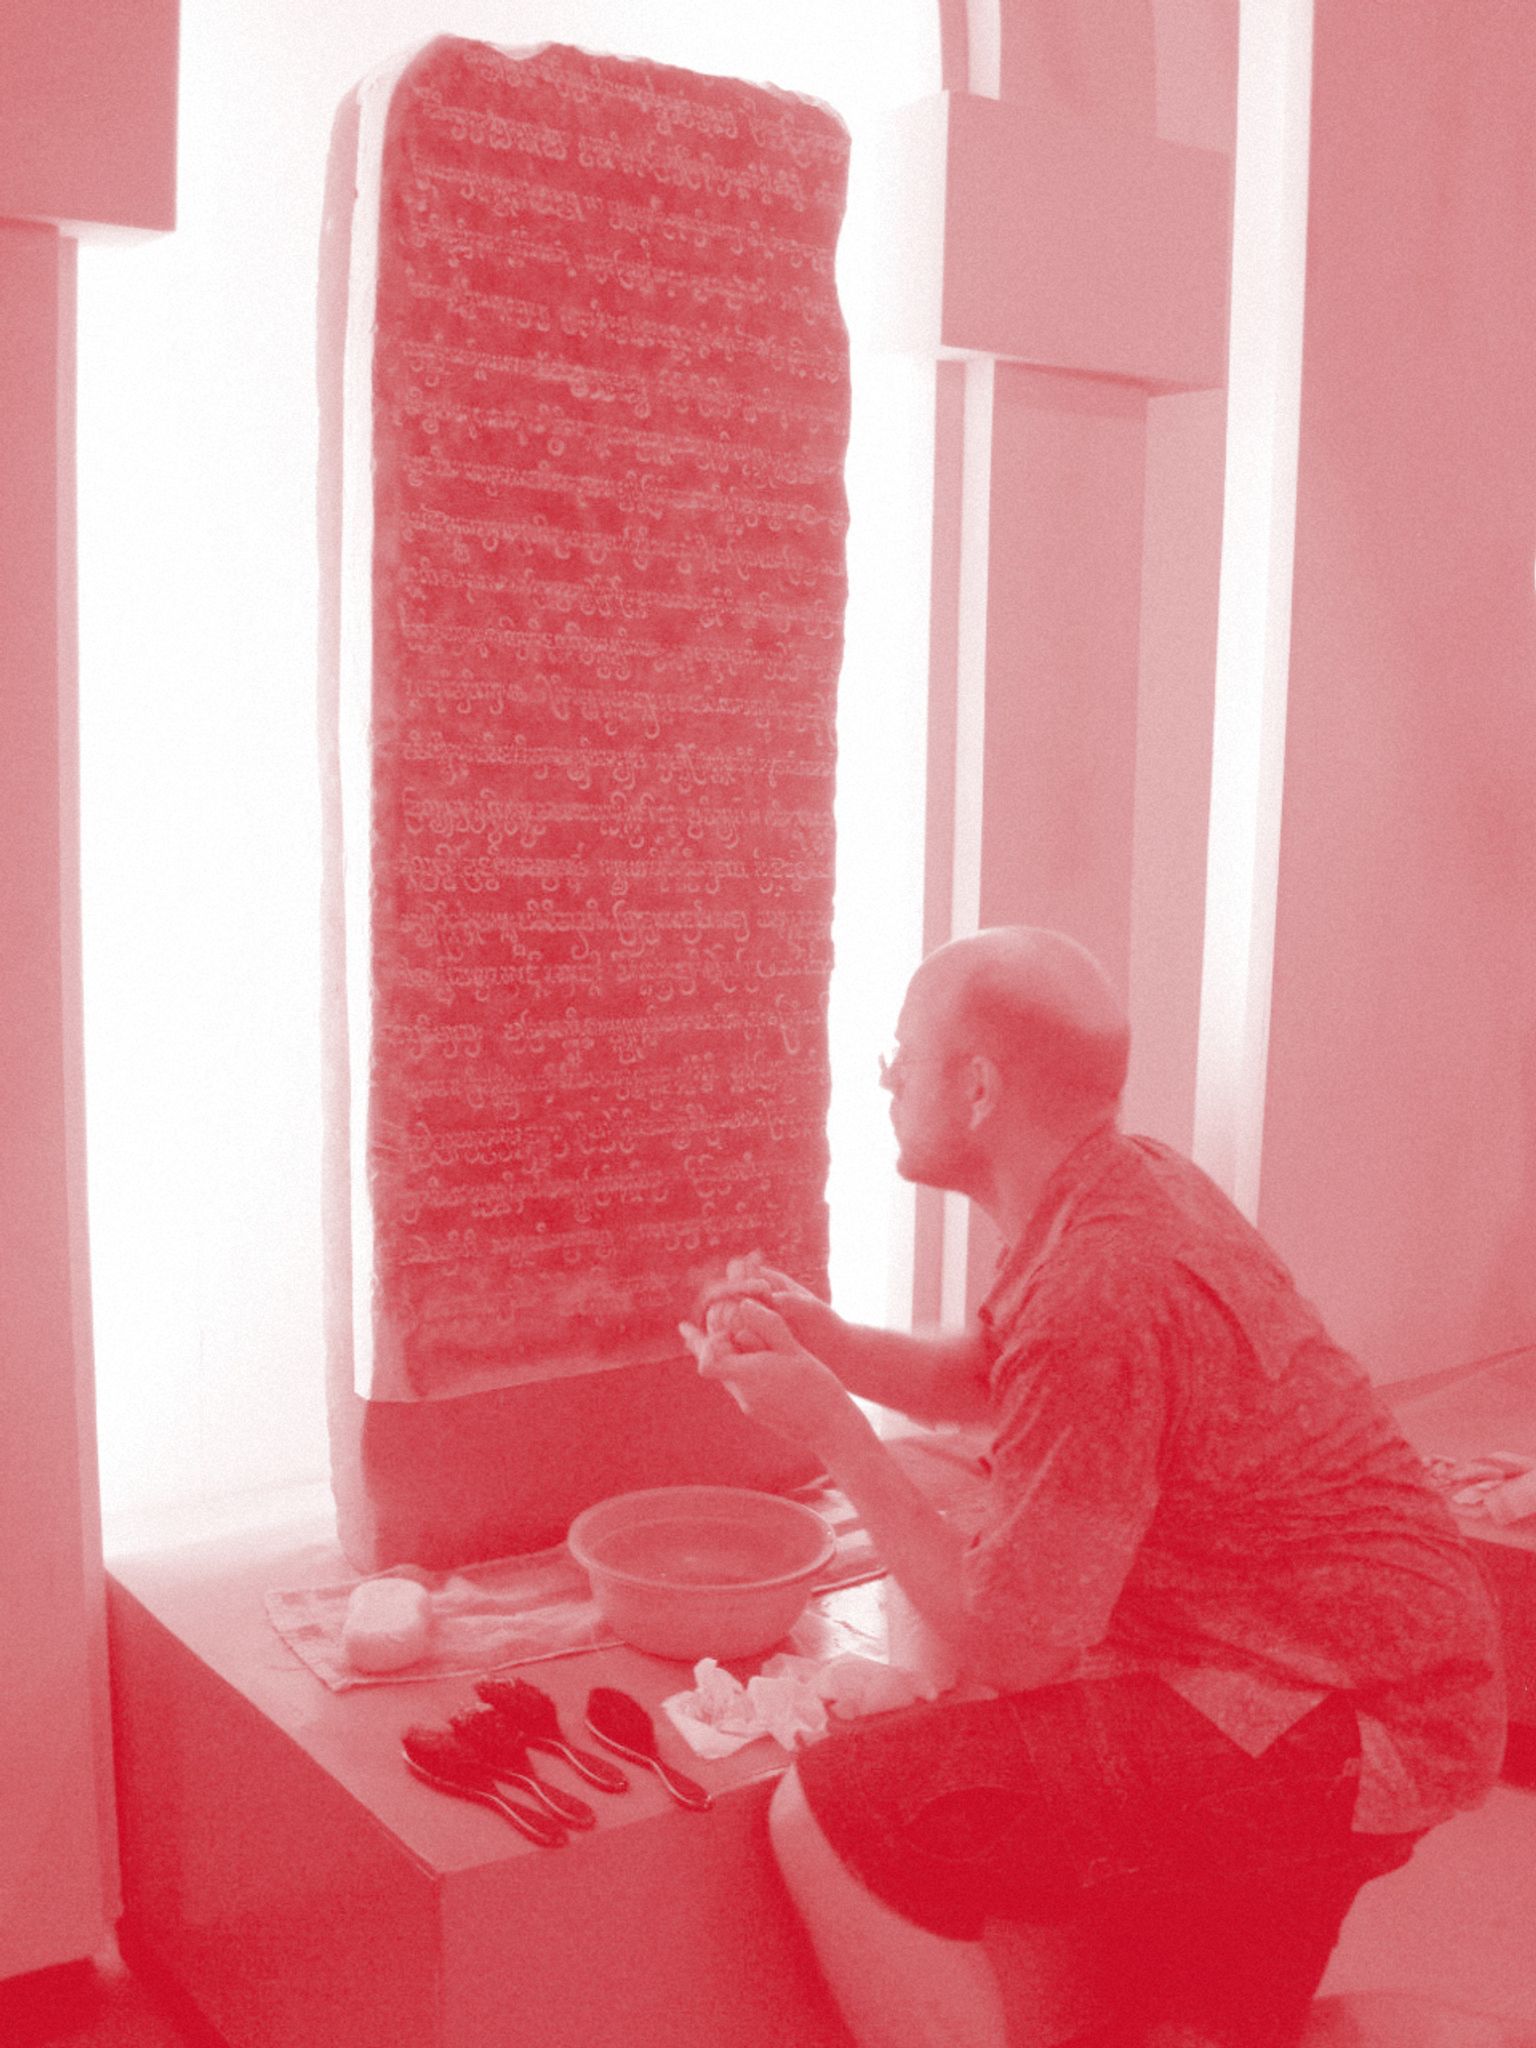 Arlo Griffiths et Khom Sreymom en cours de documenter une inscription au Vietnam (2018)